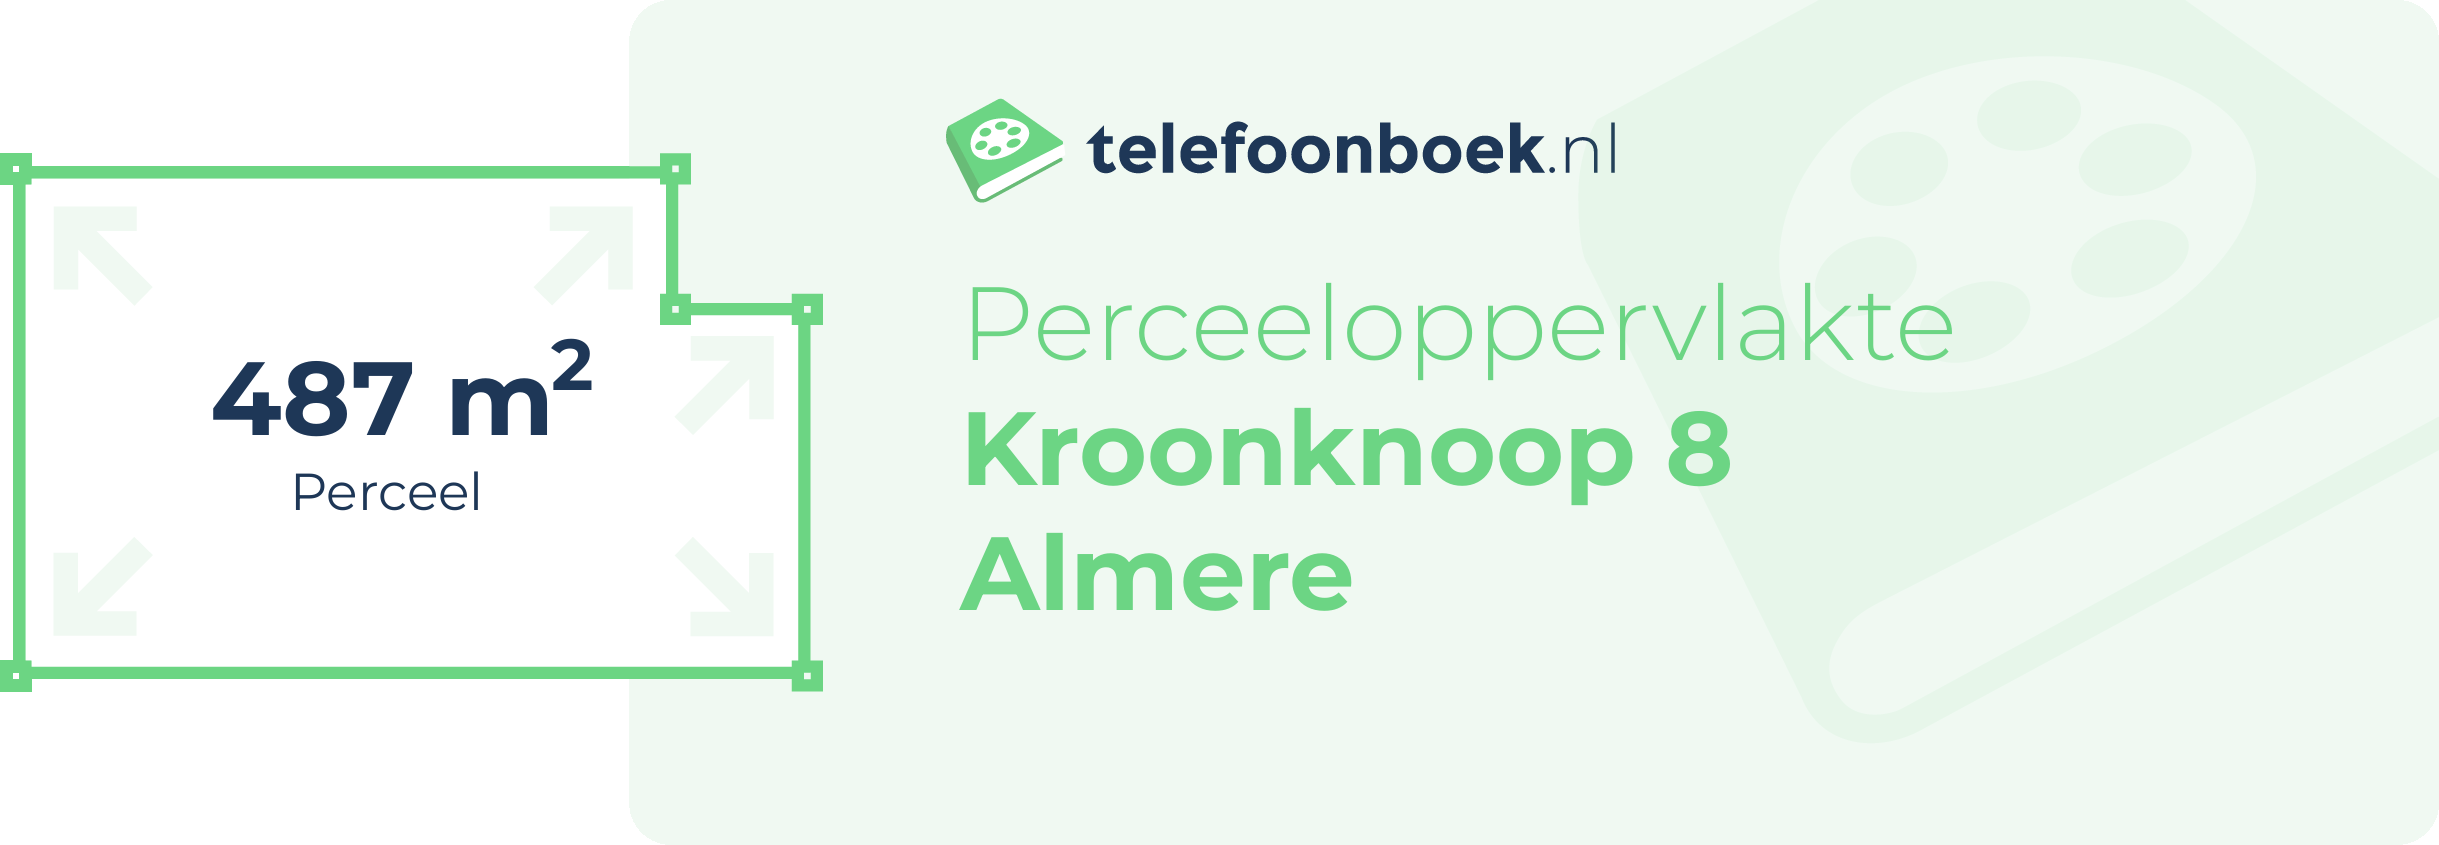 Perceeloppervlakte Kroonknoop 8 Almere